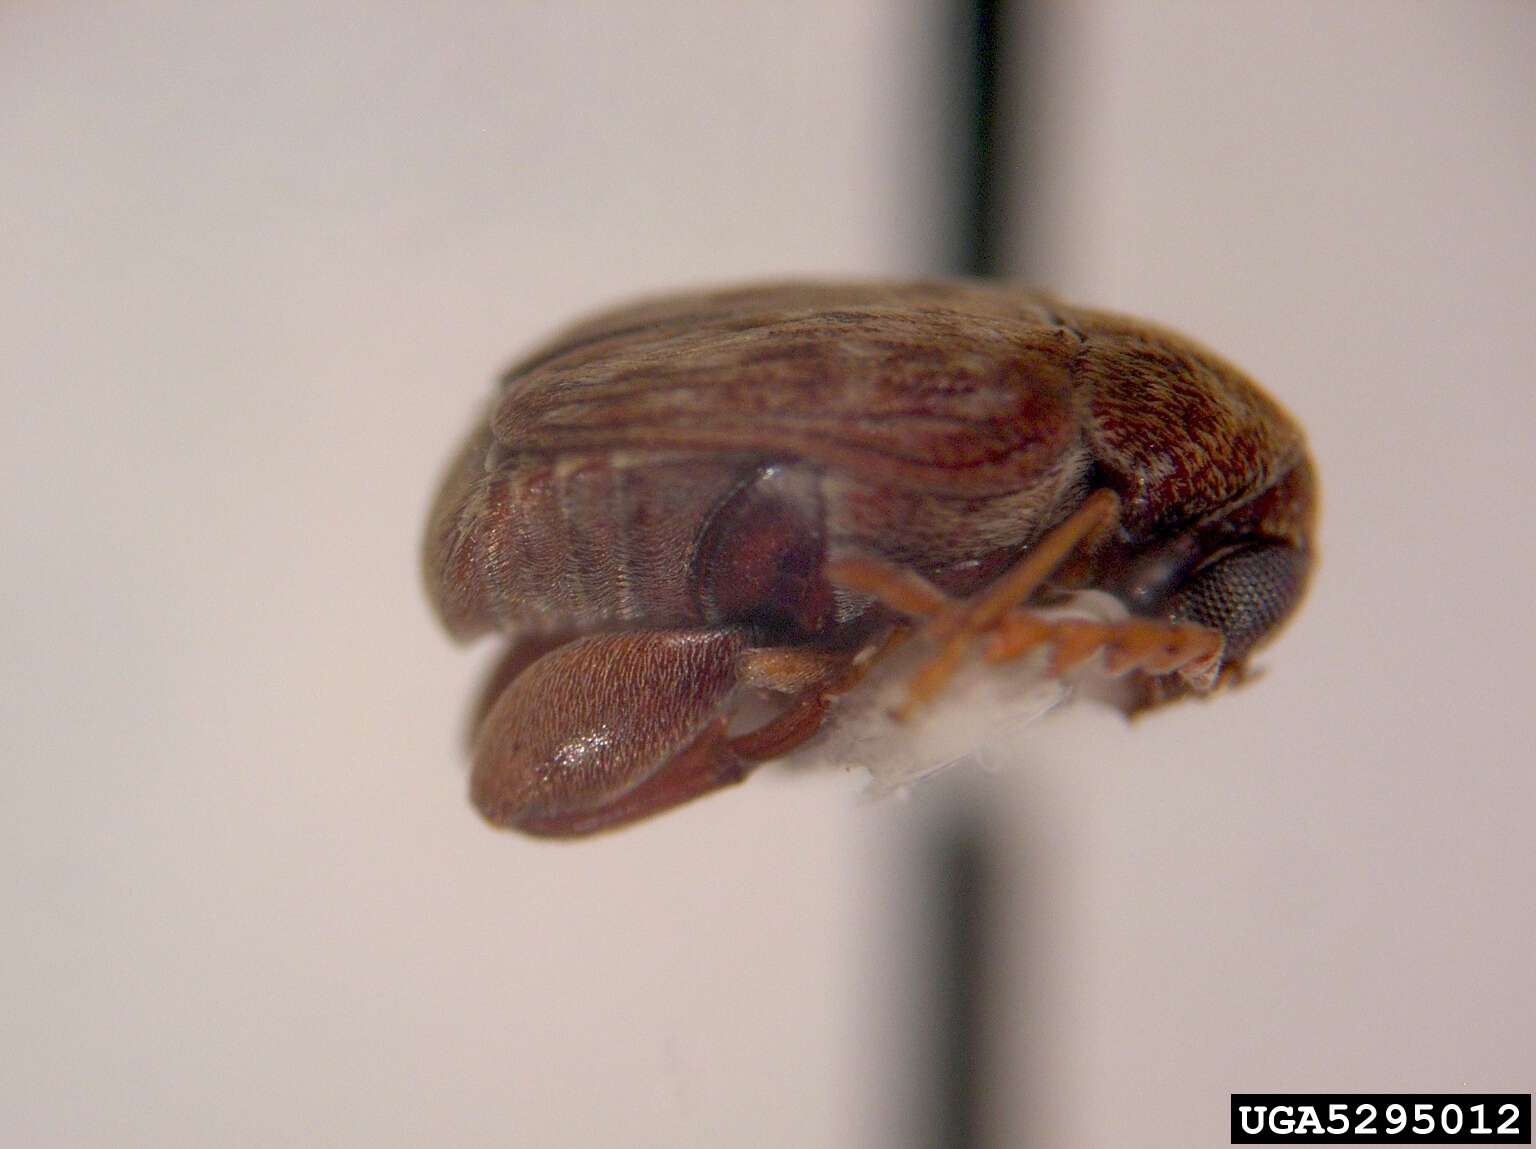 Image of Bean weevil